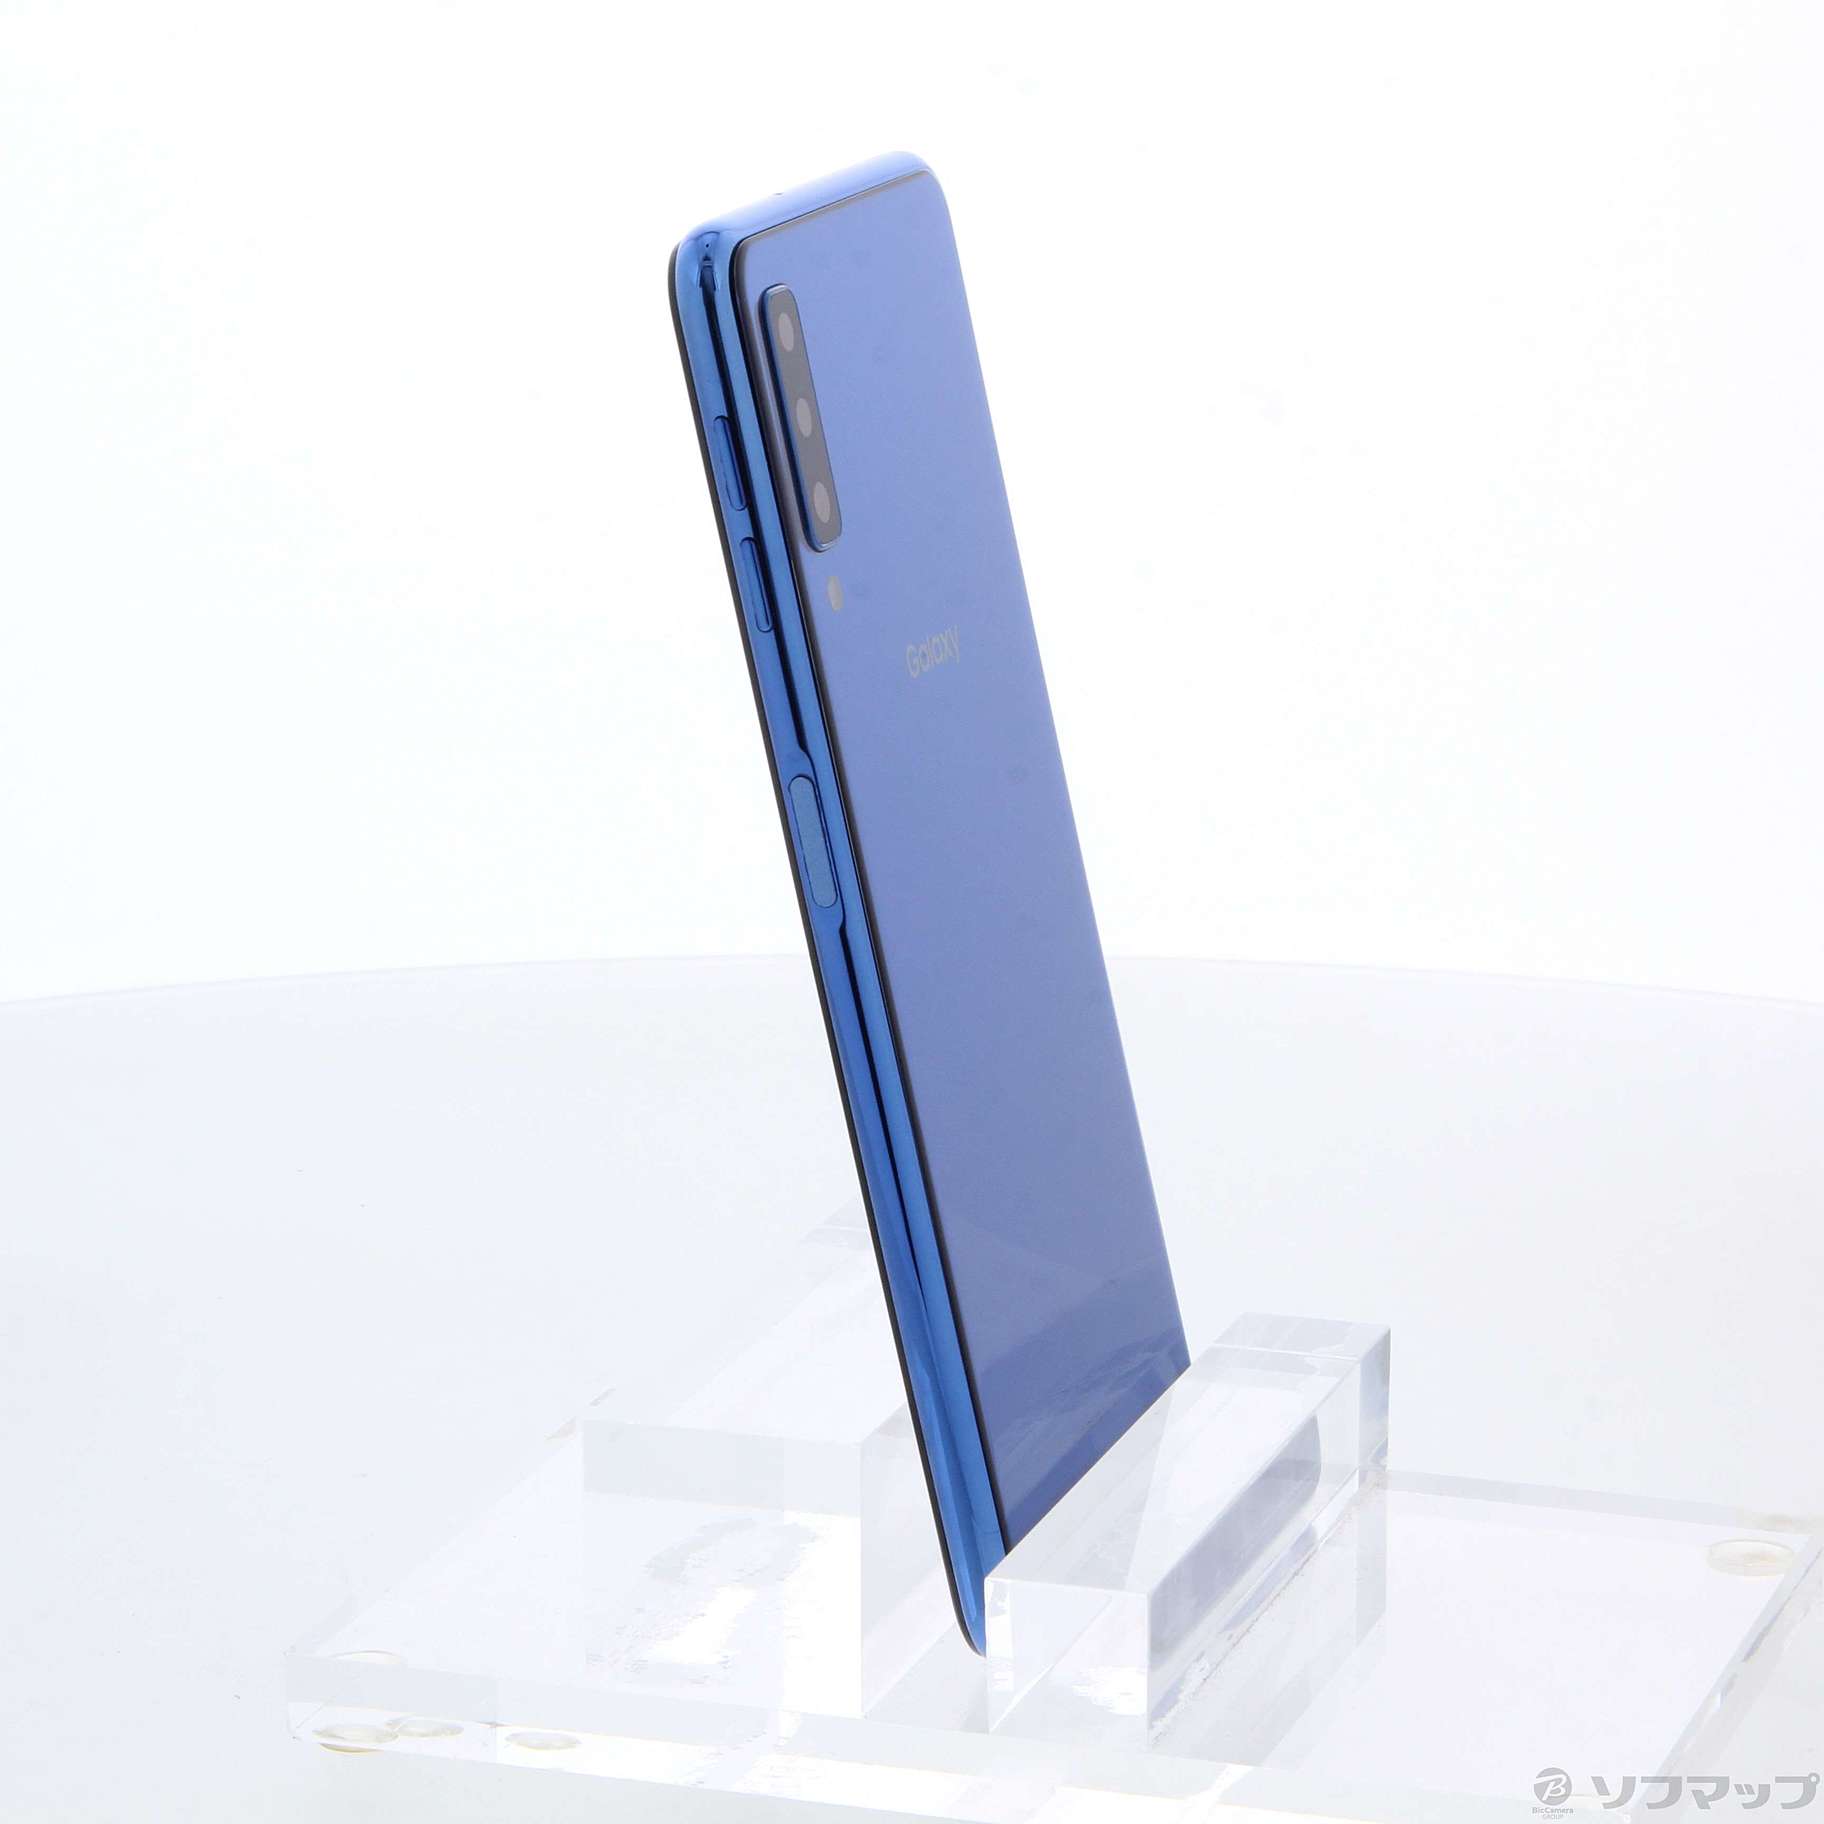 GalaxyA7色【新品】Garaxy A7 64GB SIMフリー/ブルー/